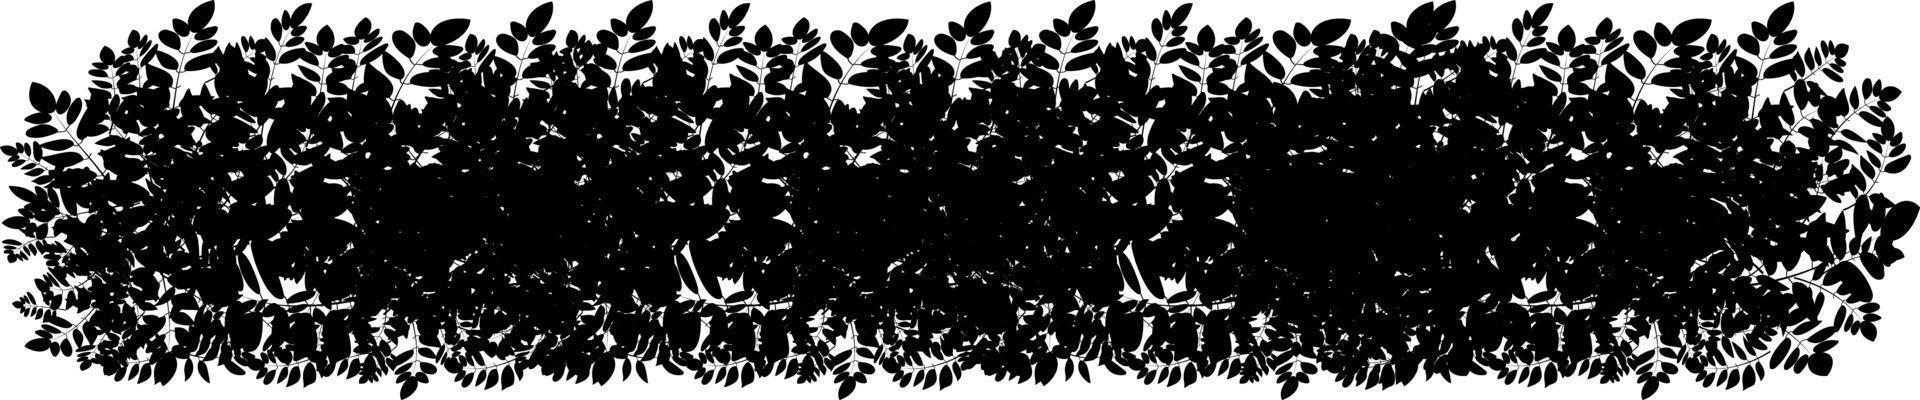 conjunto de plantas negras ornamentales en forma de seto. arbusto de jardín realista, arbusto de temporada, boj, follaje de arbusto de corona de árbol. vector